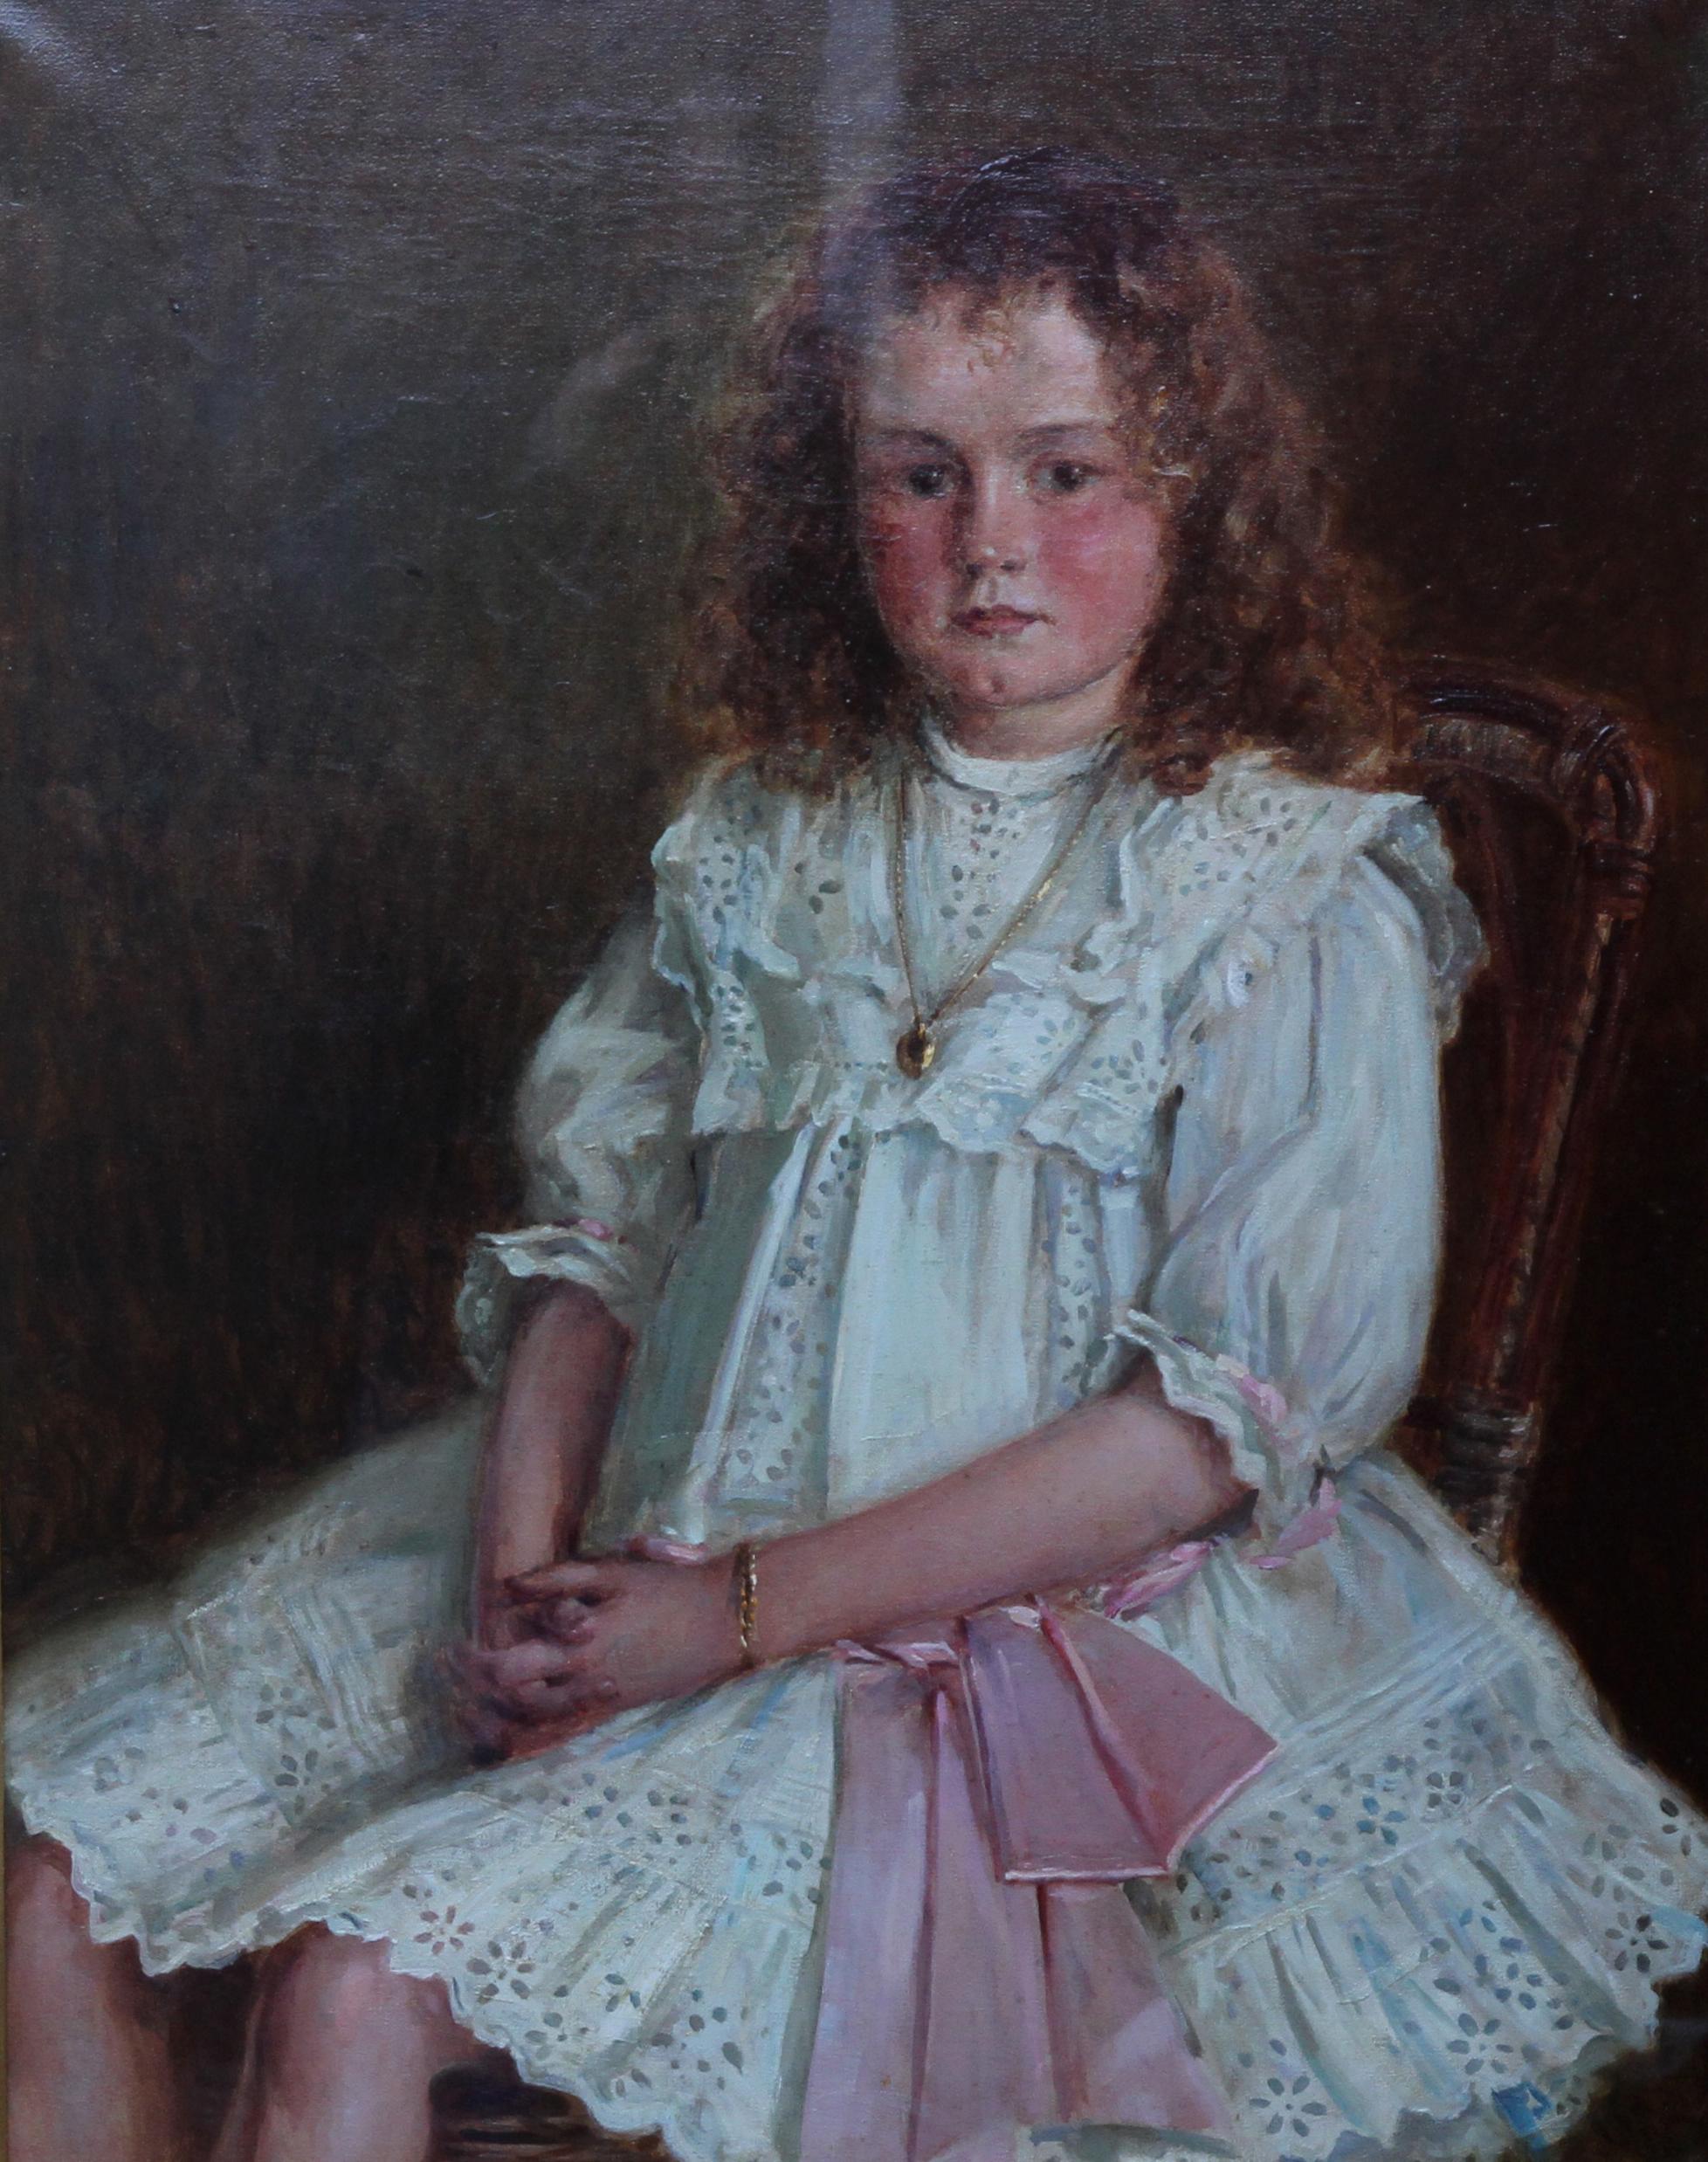 Porträt eines jungen walisischen Mädchens – Enid Richards – britische edwardianische Staithes-Kunst – Painting von Ernest Higgins Rigg